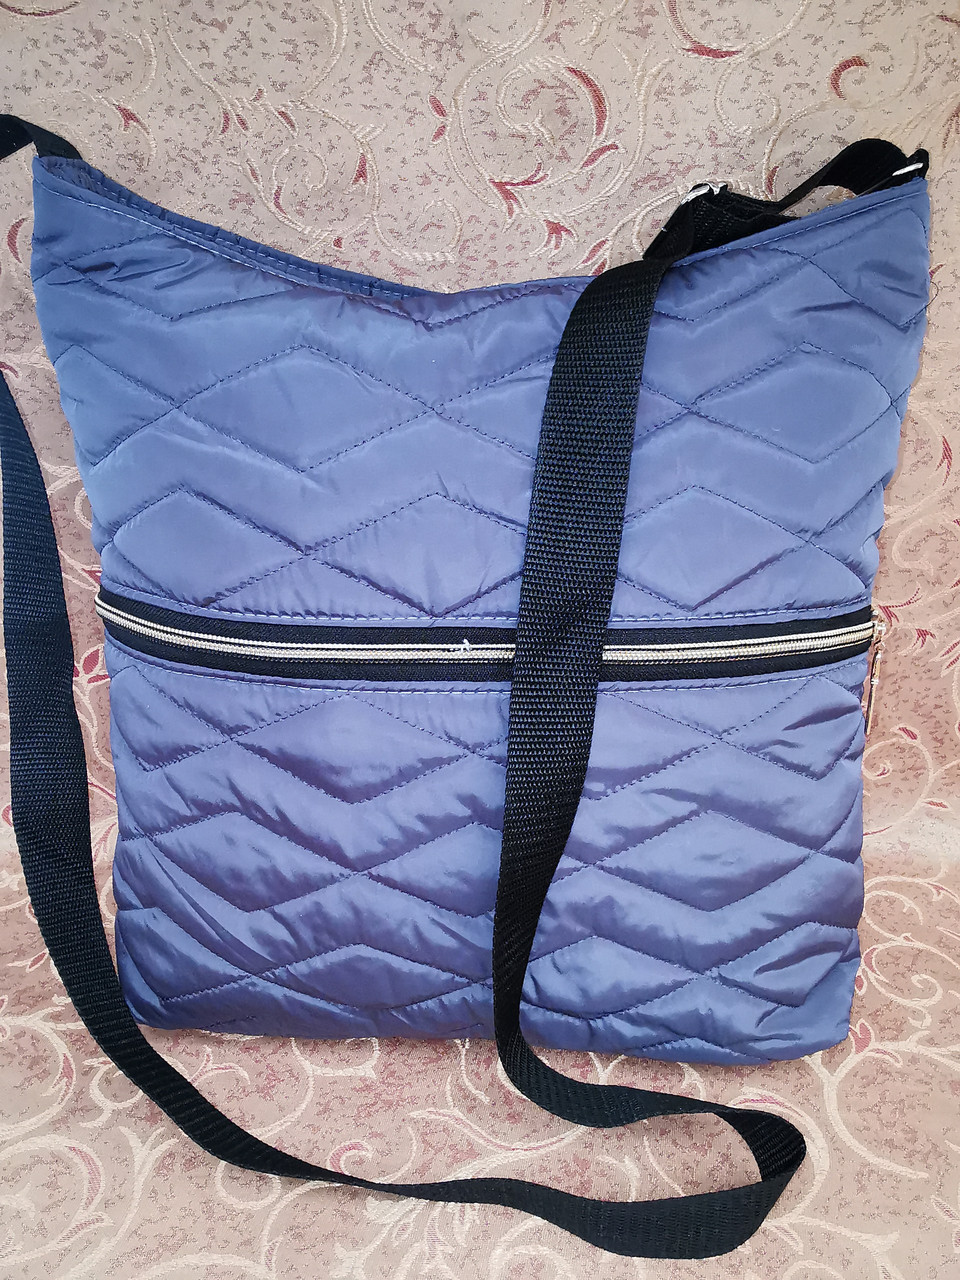 Женская сумка планшет на плечо/Клатч женский Сумка стеганная только ОПТ